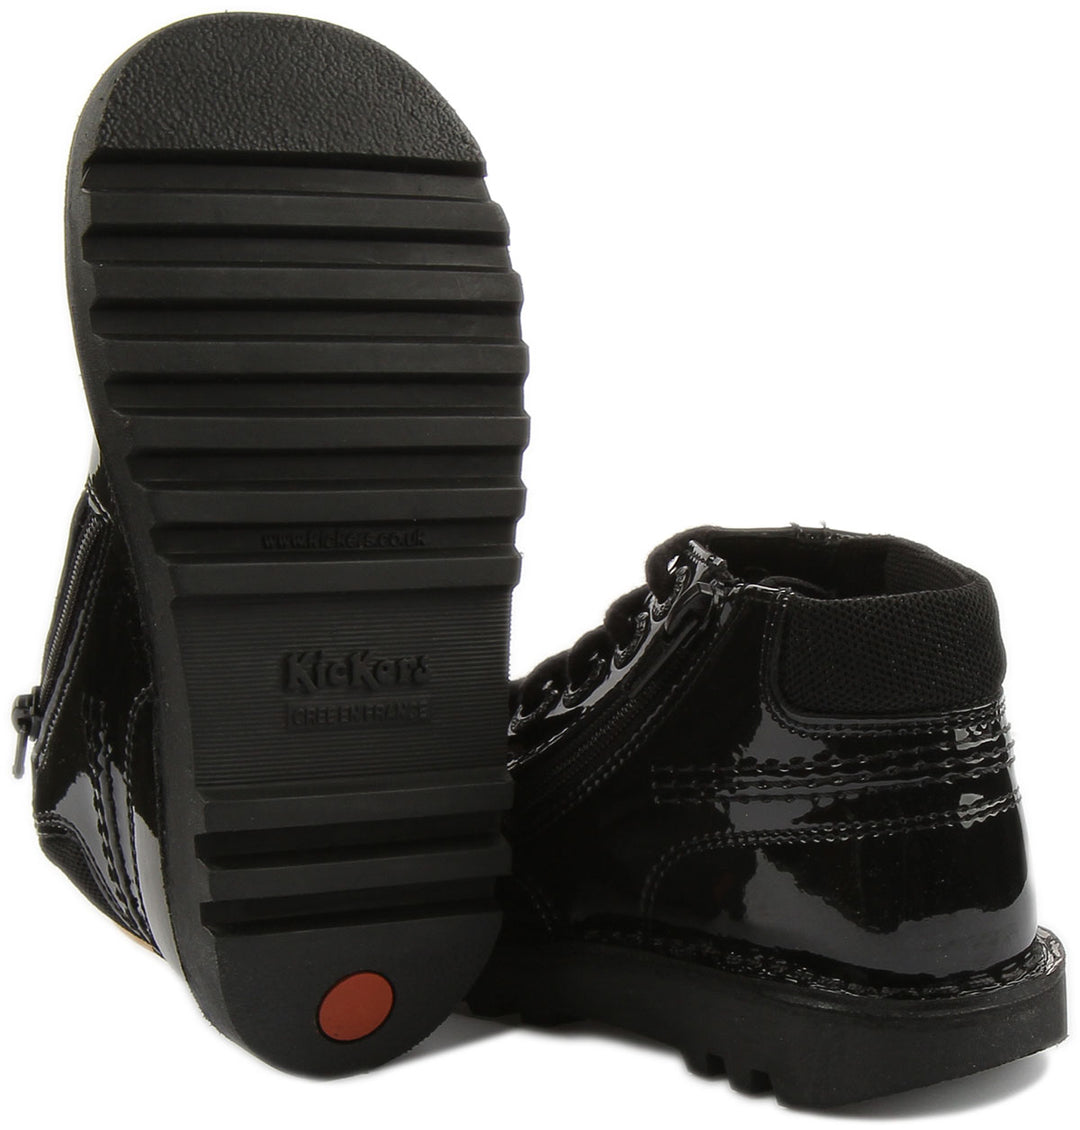 Kickers Kick Hi Faeries Chaussures à lacets en cuir pour bébés en verni noir